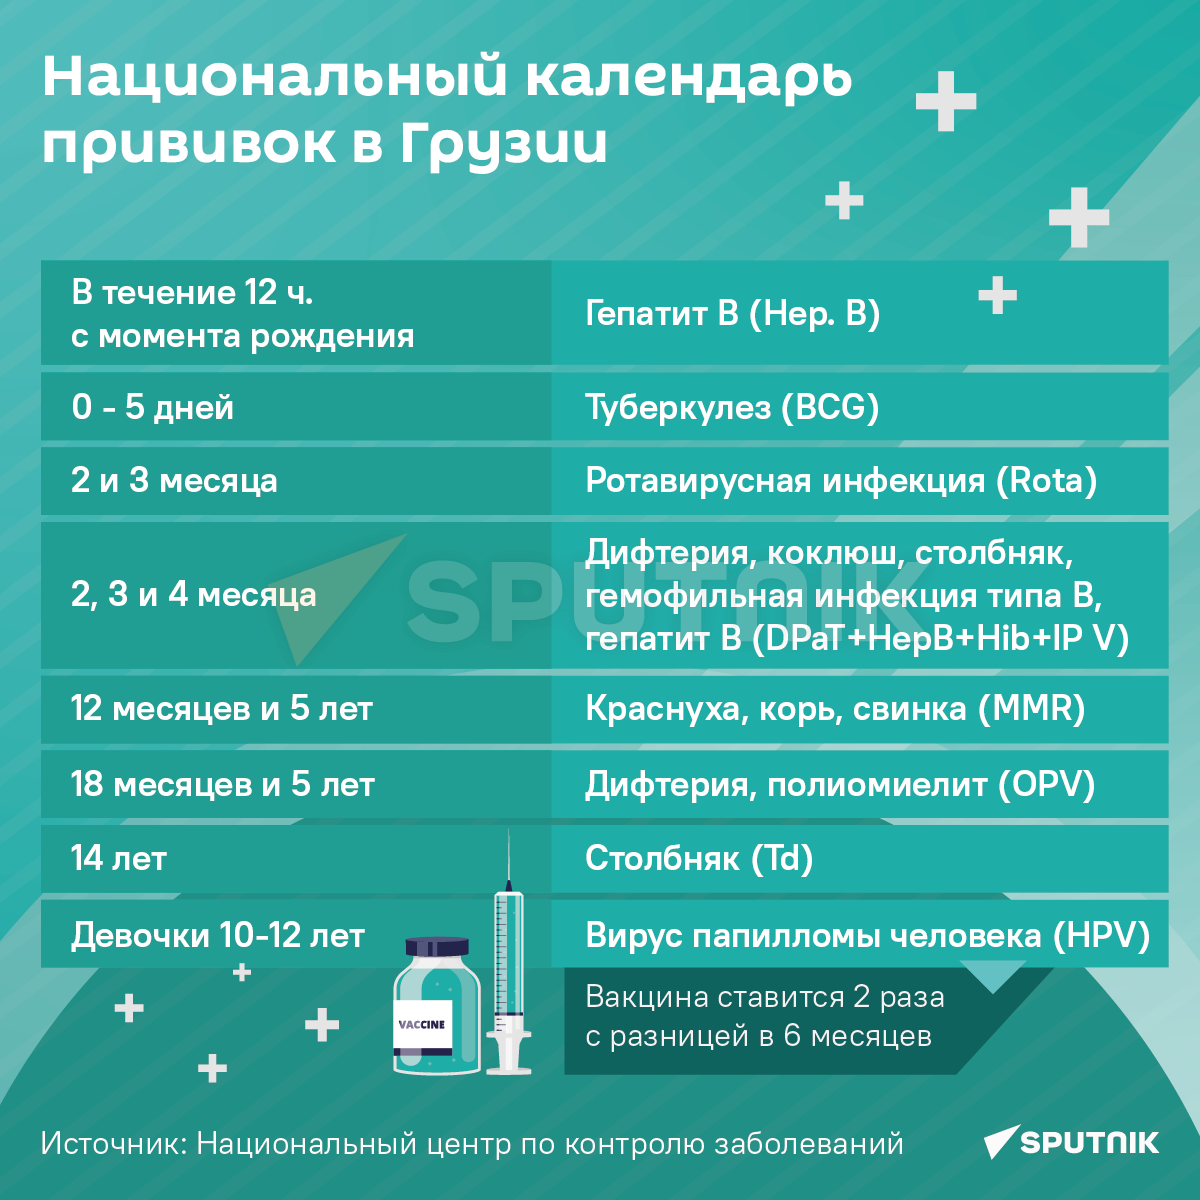 Национальный календарь прививок в Грузии - Sputnik Грузия